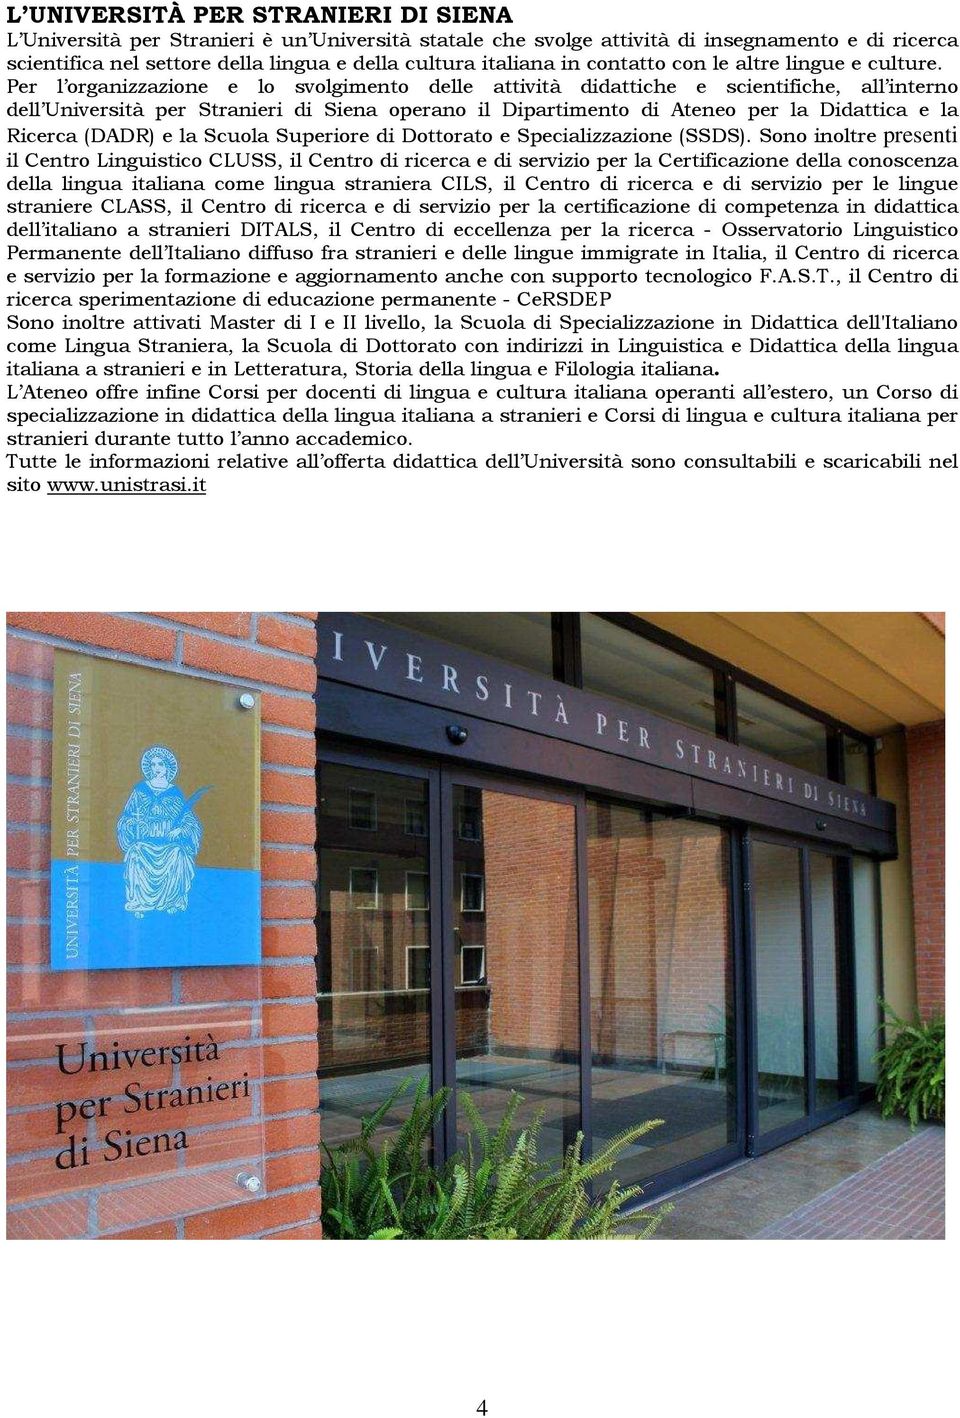 Per l organizzazione e lo svolgimento delle attività didattiche e scientifiche, all interno dell Università per Stranieri di Siena operano il Dipartimento di Ateneo per la Didattica e la Ricerca